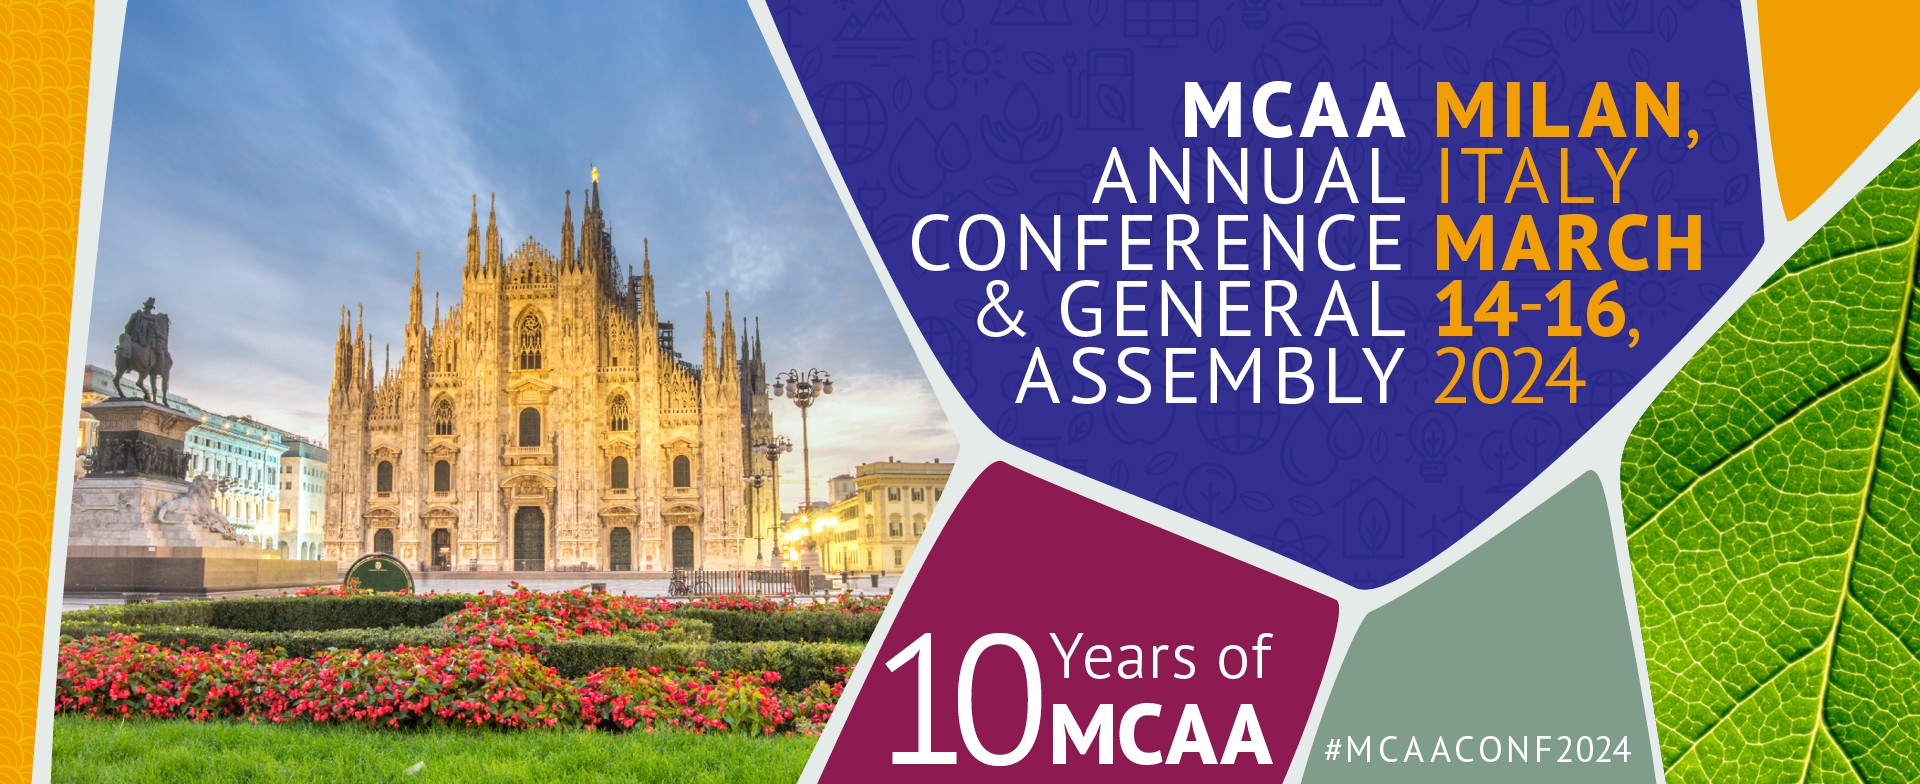 Ετήσιο συνέδριο και γενική συνέλευση των αποφοίτων Marie Skłodowska-Curie (MCAA)